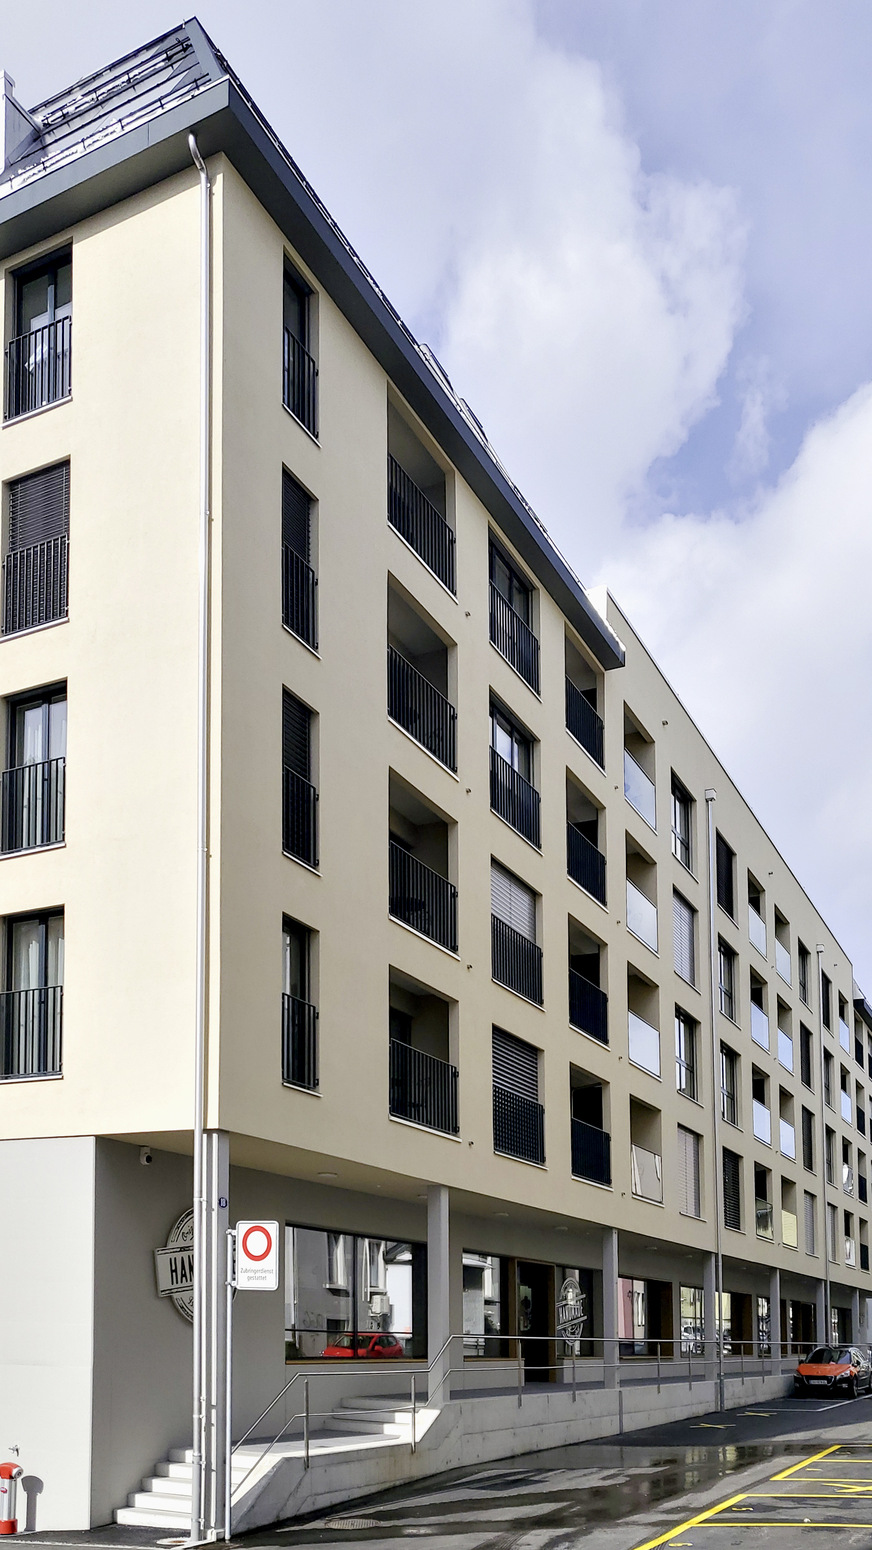 Bild 2 Mit 56 Appartements und Spa-Bereich hat das Boarding House in St. Gallen ein ähnliches Warmwasser-Verbrauchsprofil wie ein Hotel. Entsprechend ist der Wärmespeicher in der Heizzentrale ausgelegt.